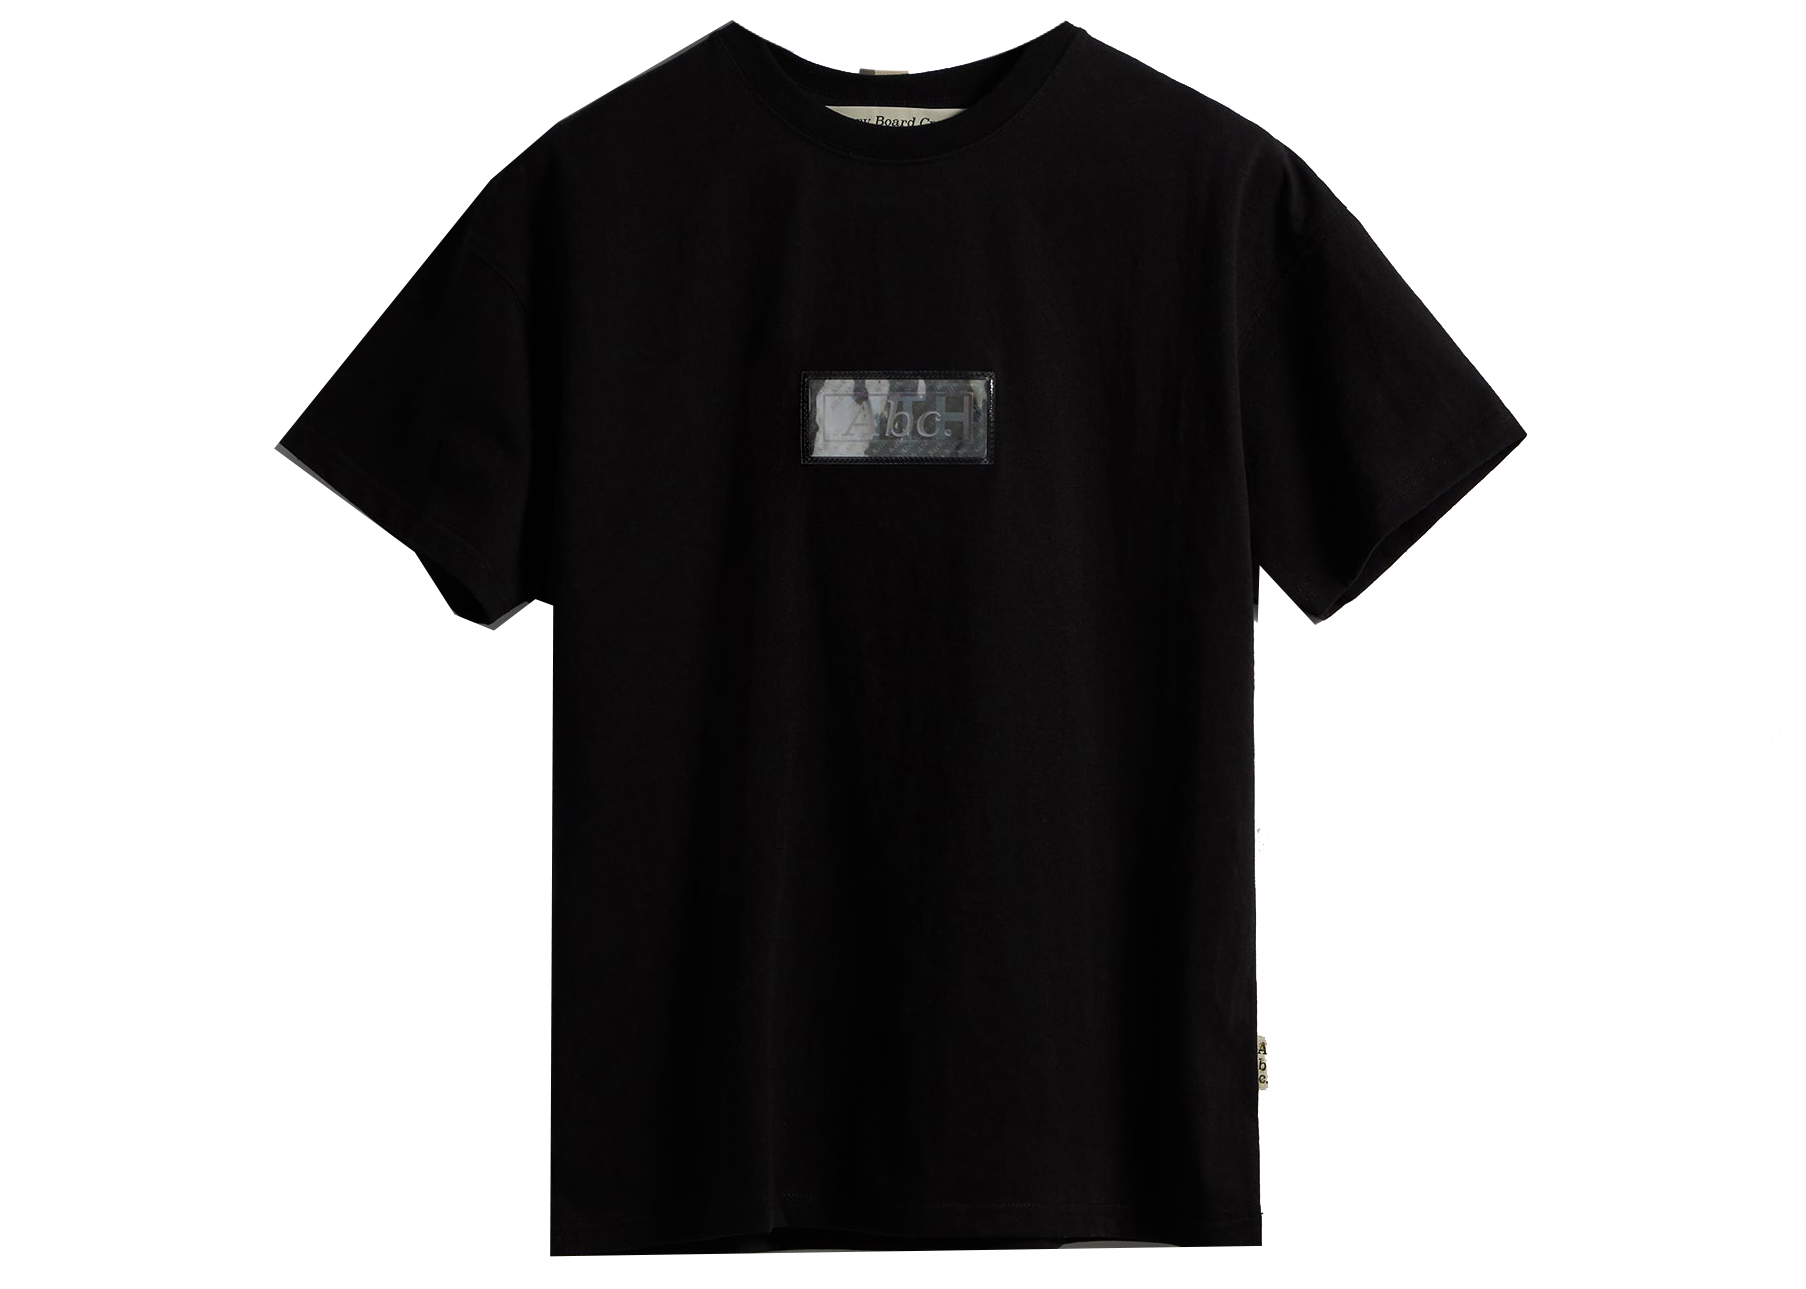 KITHKITH x Advisory Board Crystals Tシャツ 黒L